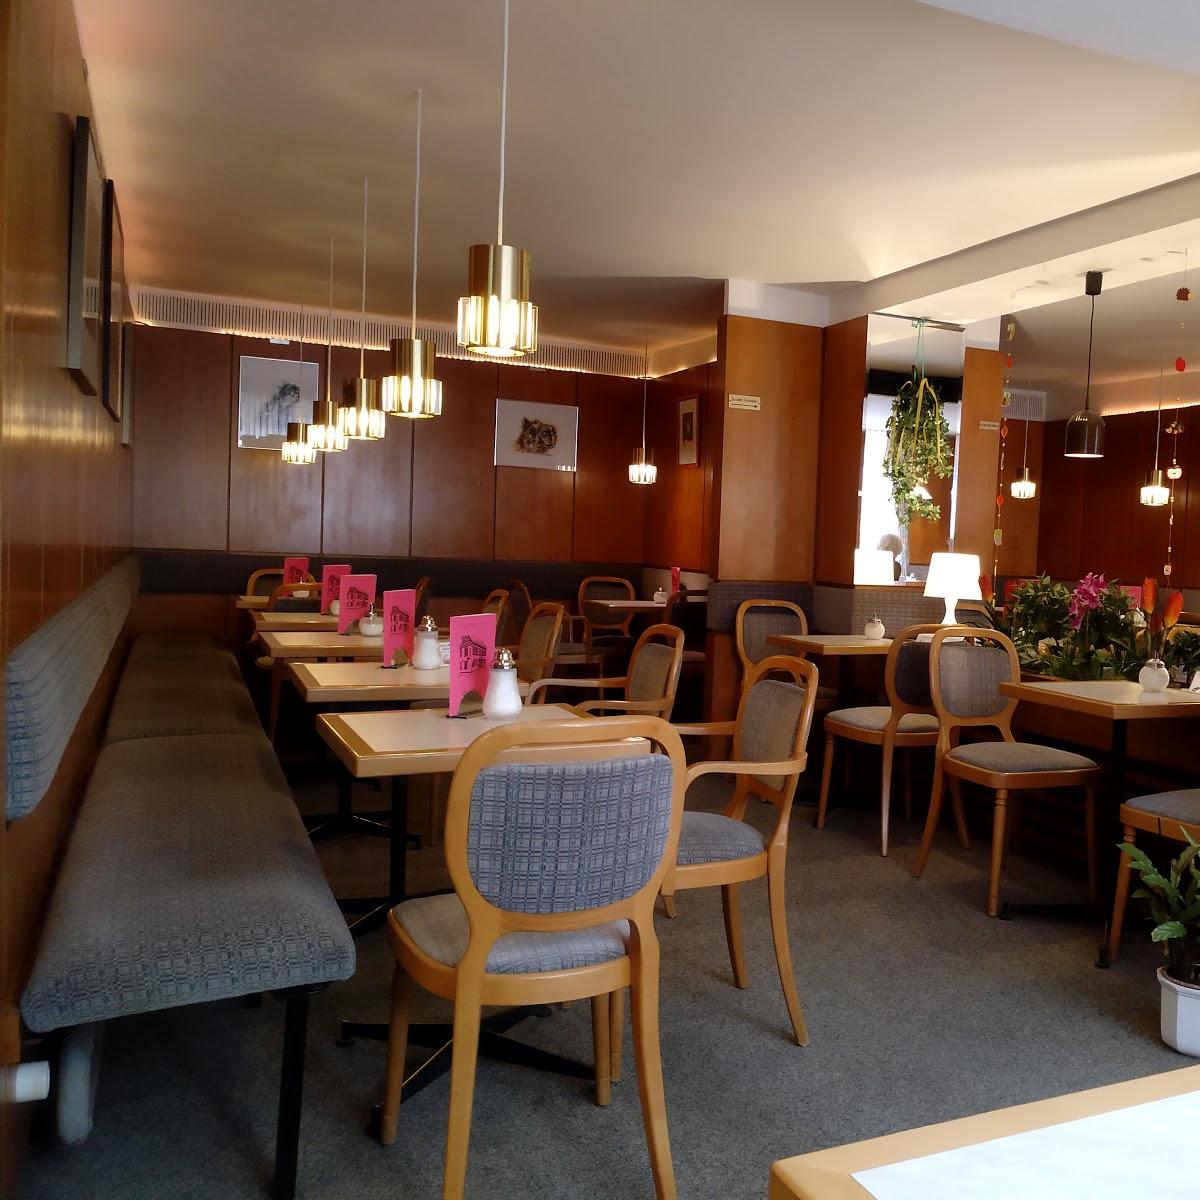 Restaurant "Konditorei-Cafe Süße Ecke" in Lage